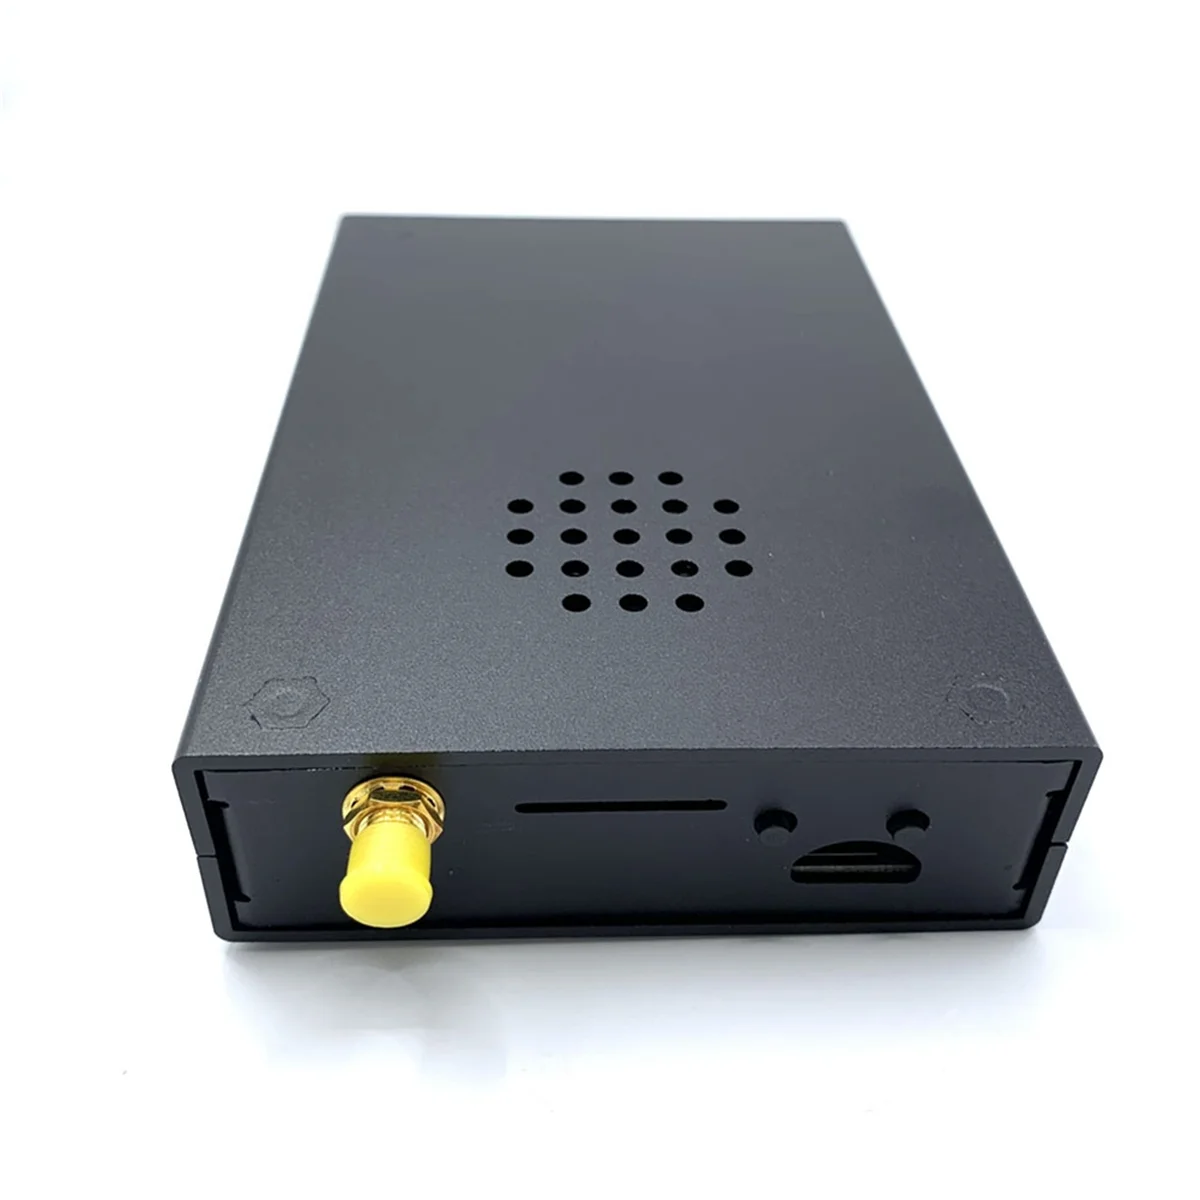 Для HackRF One Portapack H2 от 1 МГц до 6 ГГц SDR Программно Определяемый радиопередатчик с прошивкой Mayhem 1.7.4 Прошитый Корпус 3